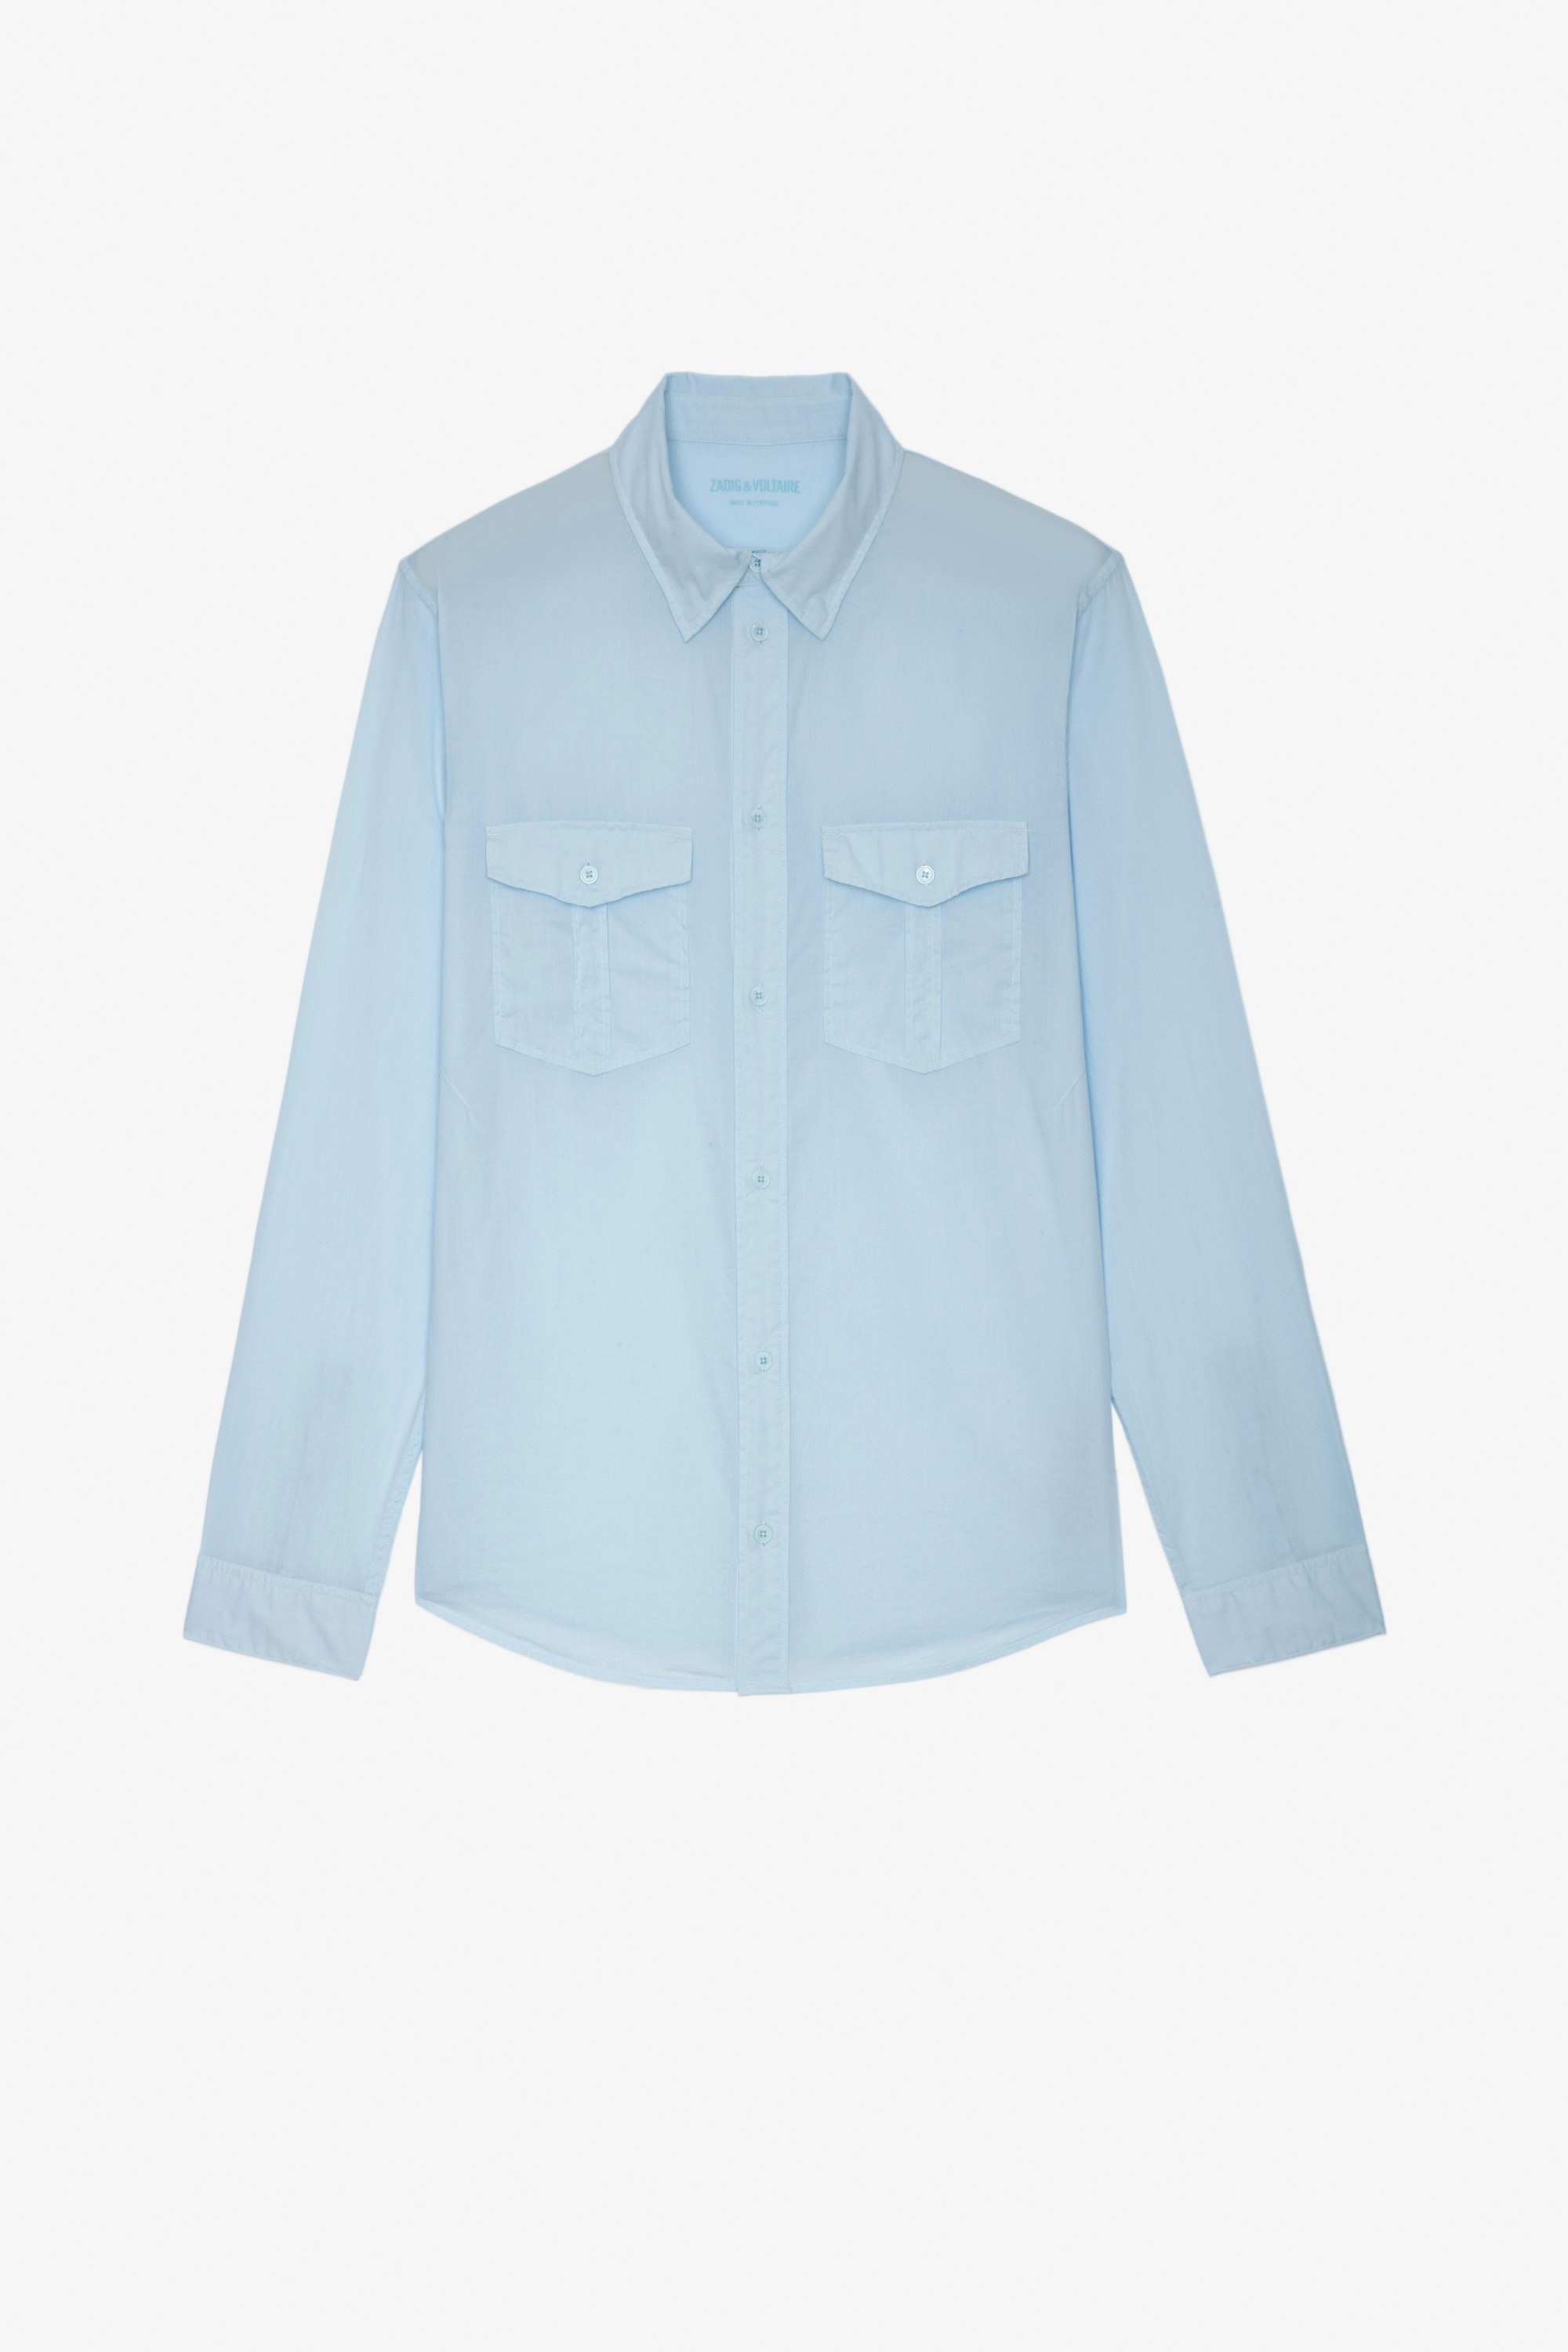 Hemd Thibaut Klassisches Herrenhemd aus himmelblauer Baumwolle